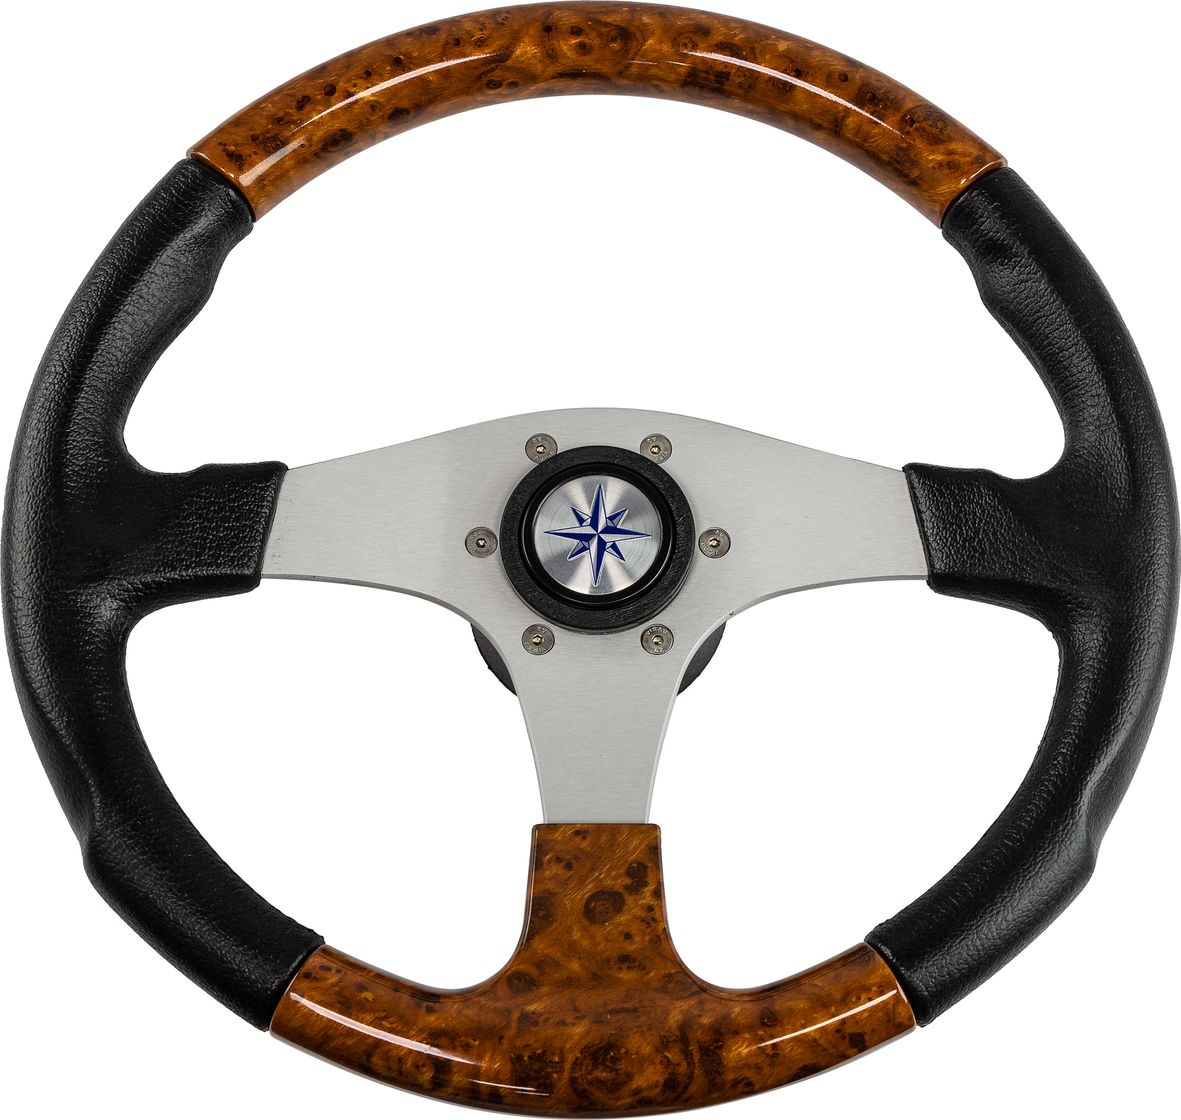 Рулевое колесо EVO MARINE 2 обод черный/коричневый, спицы серебряные д. 355 мм VN850001-45 рулевое колесо leader tanegum обод серебряные спицы д 360 мм vn7360 01